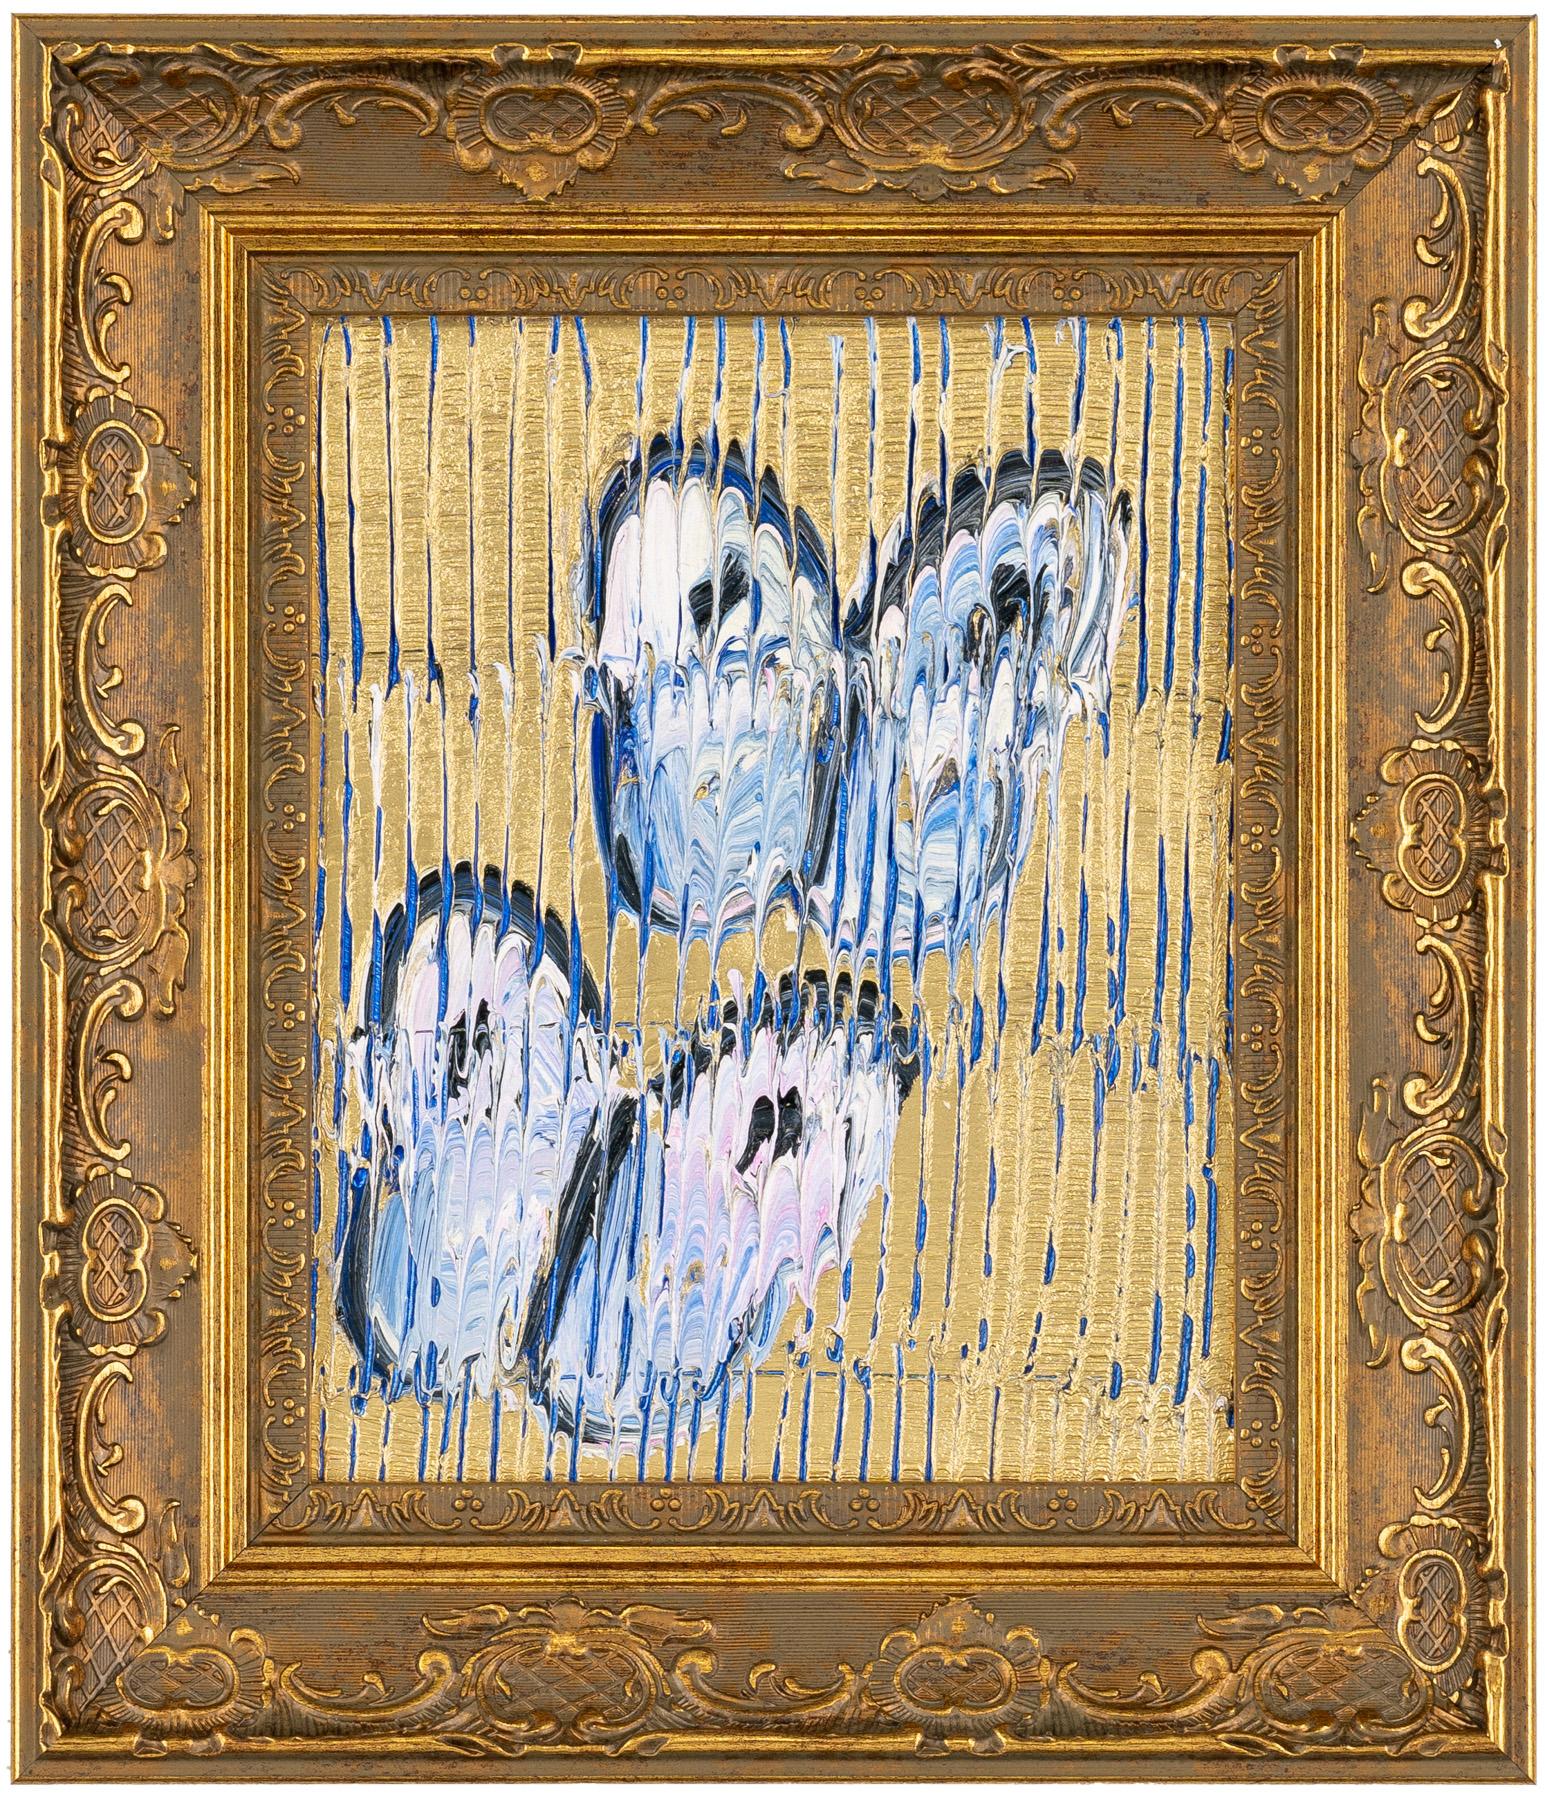 Hunt Slonem "Ascension" Hellblaue Schmetterlinge auf Goldmetallic
Schwarz umrandete hellblaue und weiße Schmetterlinge auf einem blauen, geätzten, goldmetallischen Hintergrund in einem goldenen Vintage-Rahmen.

Ungerahmt: 10 x 8 Zoll
Gerahmt: 14,5 x